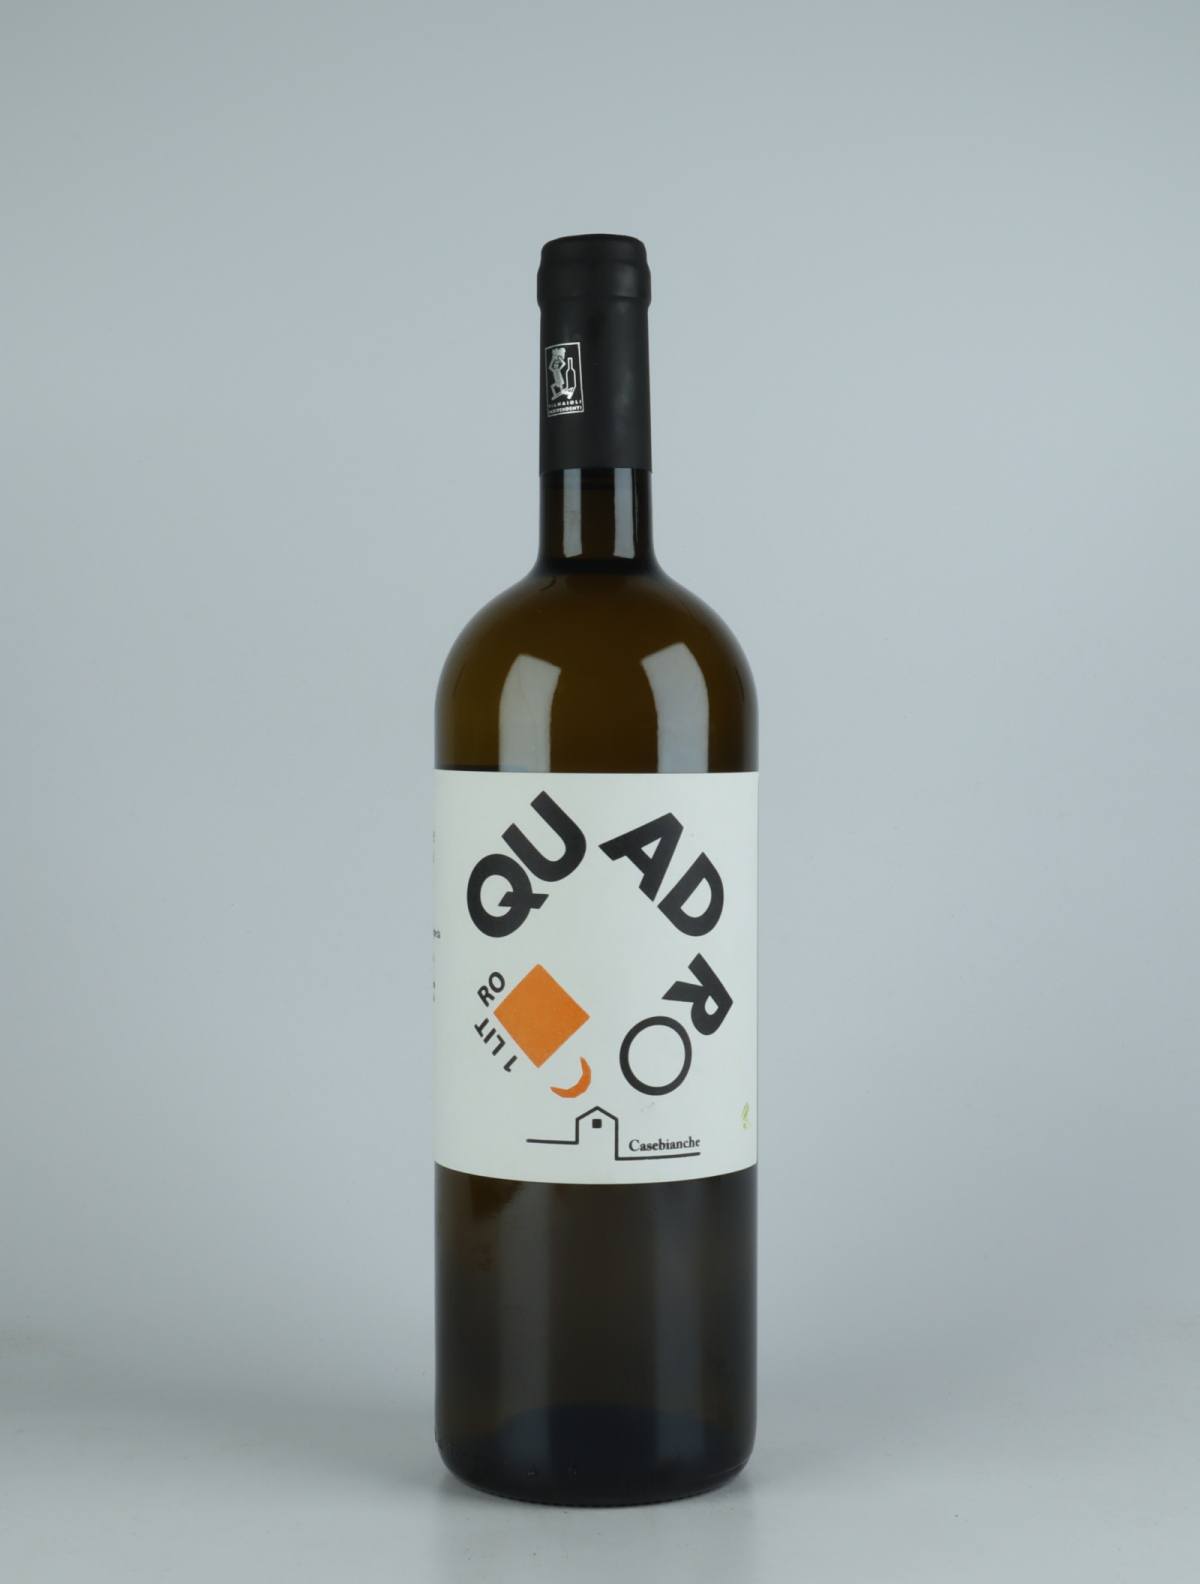 A bottle  Quadro Litro Bianco White wine from Casebianche, Campania in Italy